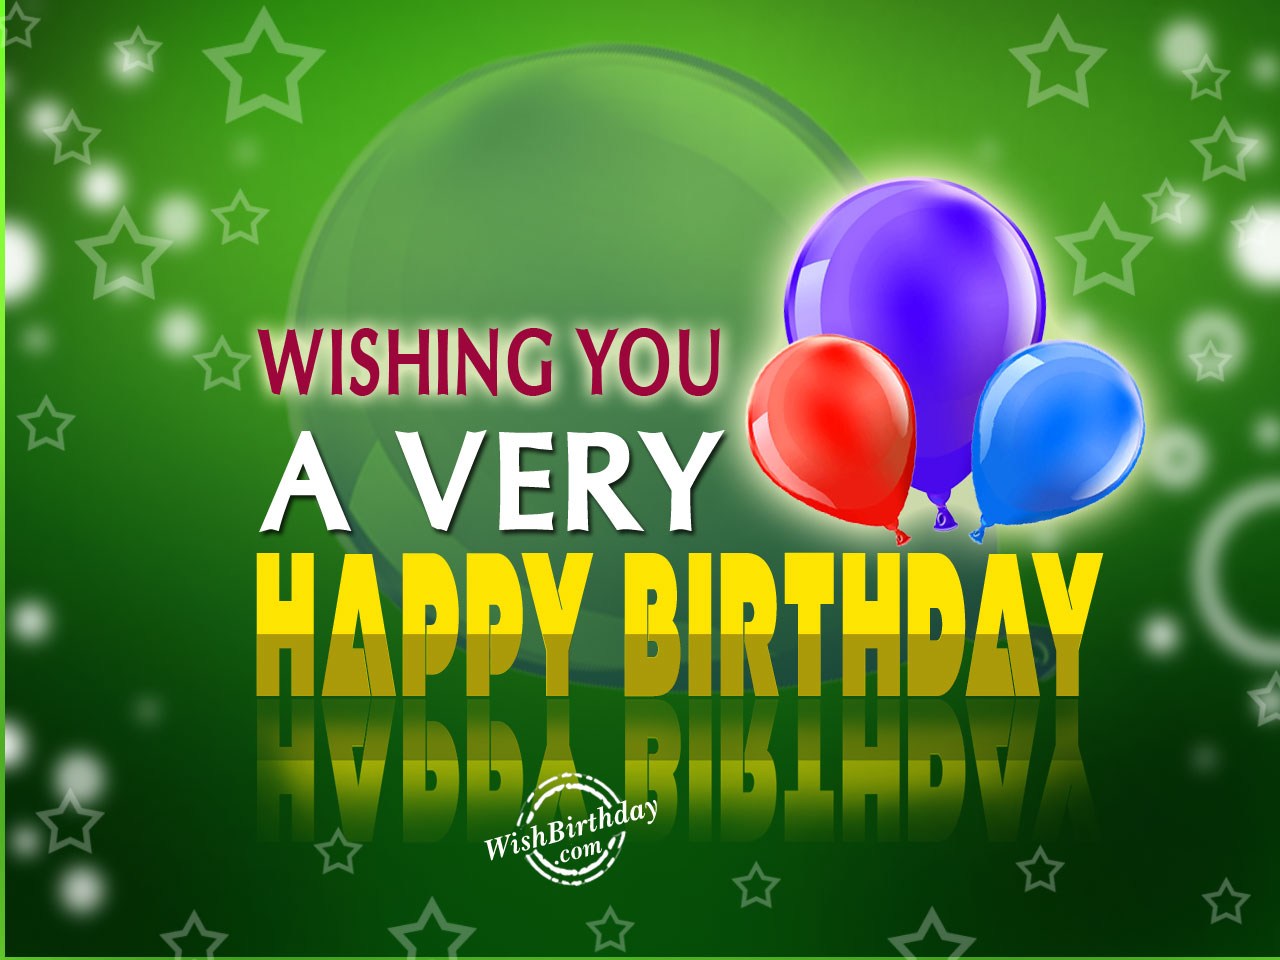 Wishing you a Very happy birthday - Birthday Wishes, Happy Birthday